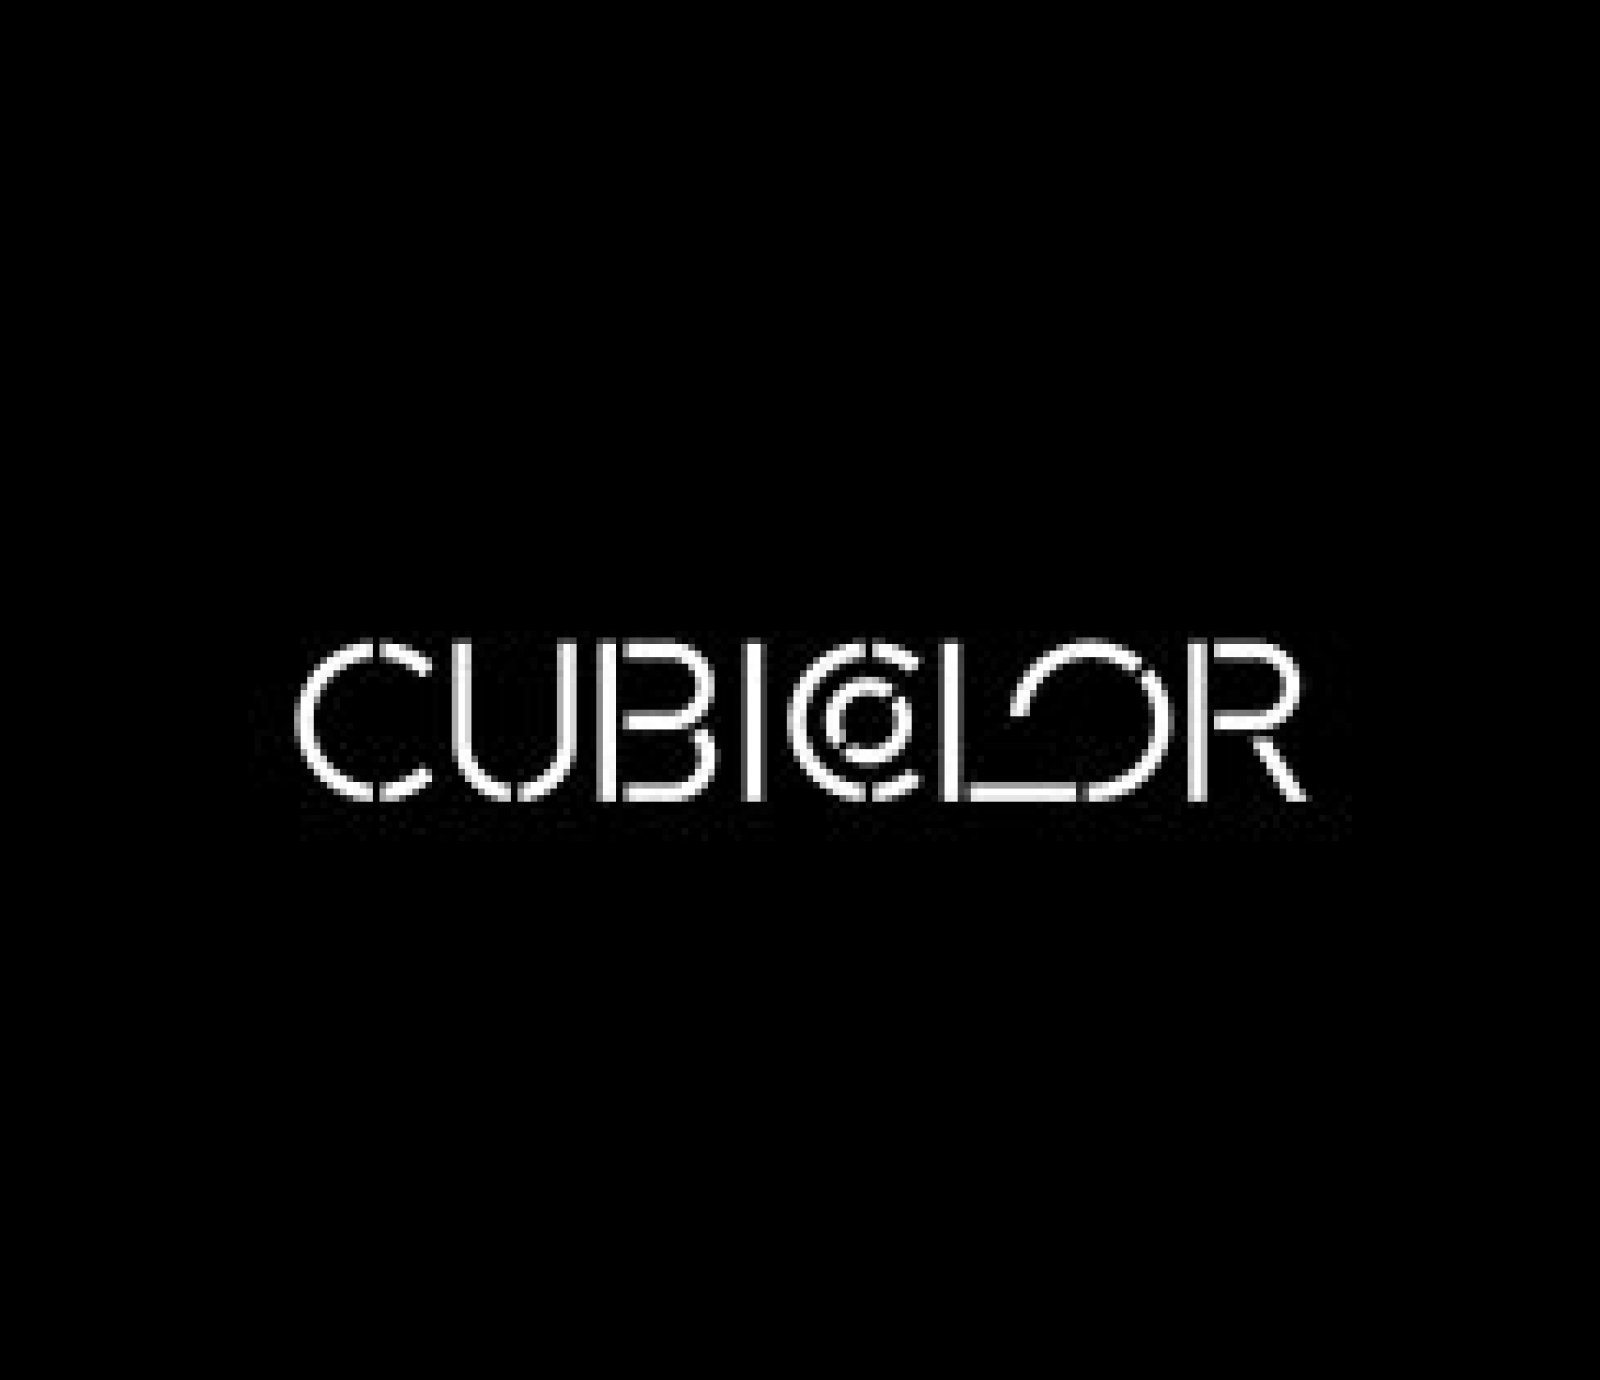 Cubicolor